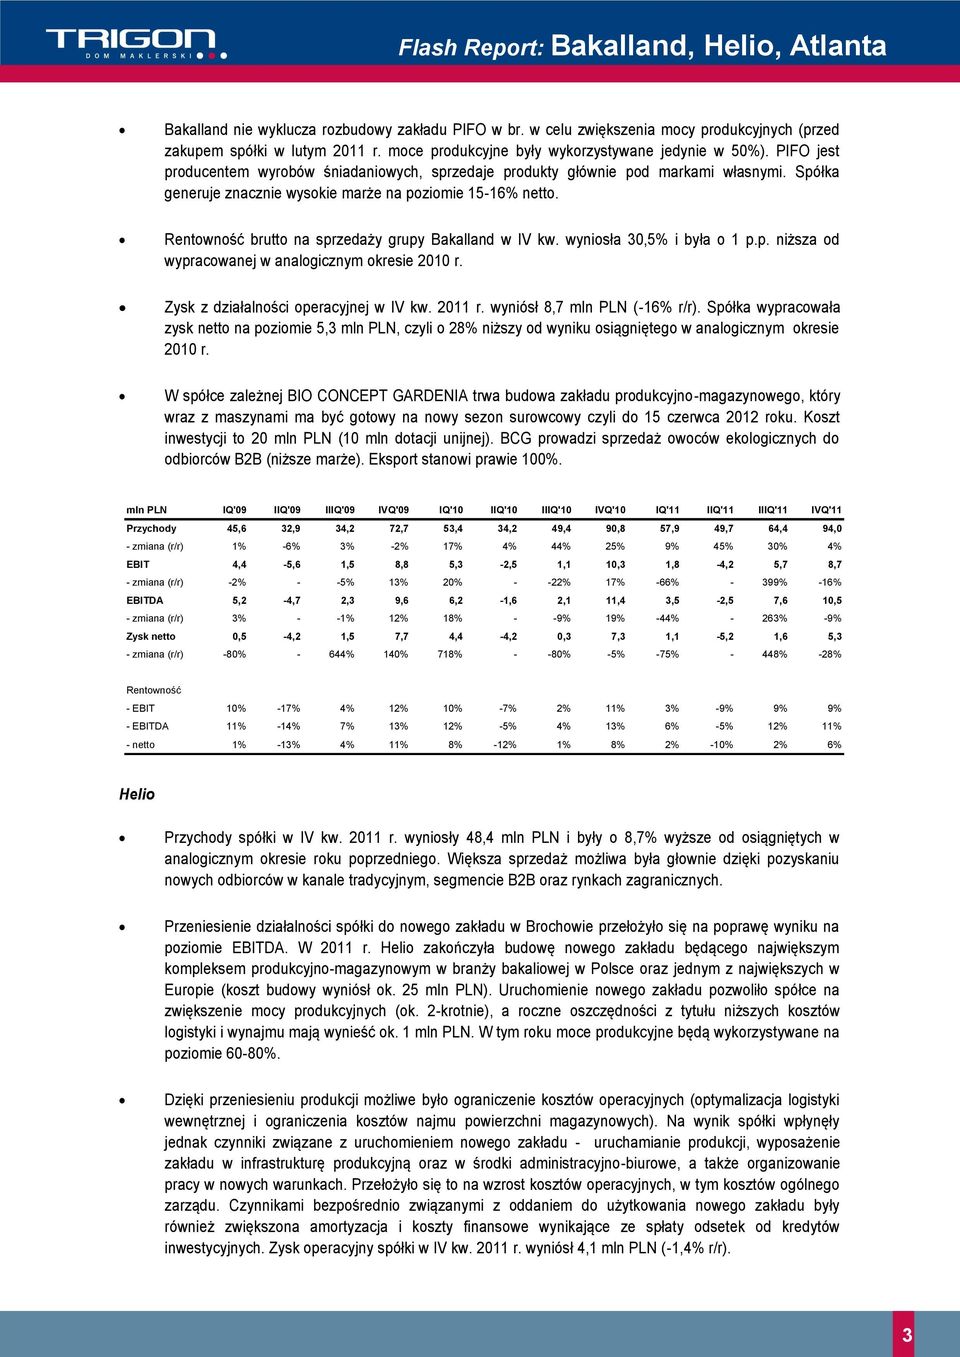 brutto na sprzedaży grupy Bakalland w IV kw. wyniosła 30,5% i była o 1 p.p. niższa od wypracowanej w analogicznym okresie 2010 r. Zysk z działalności operacyjnej w IV kw. 2011 r.